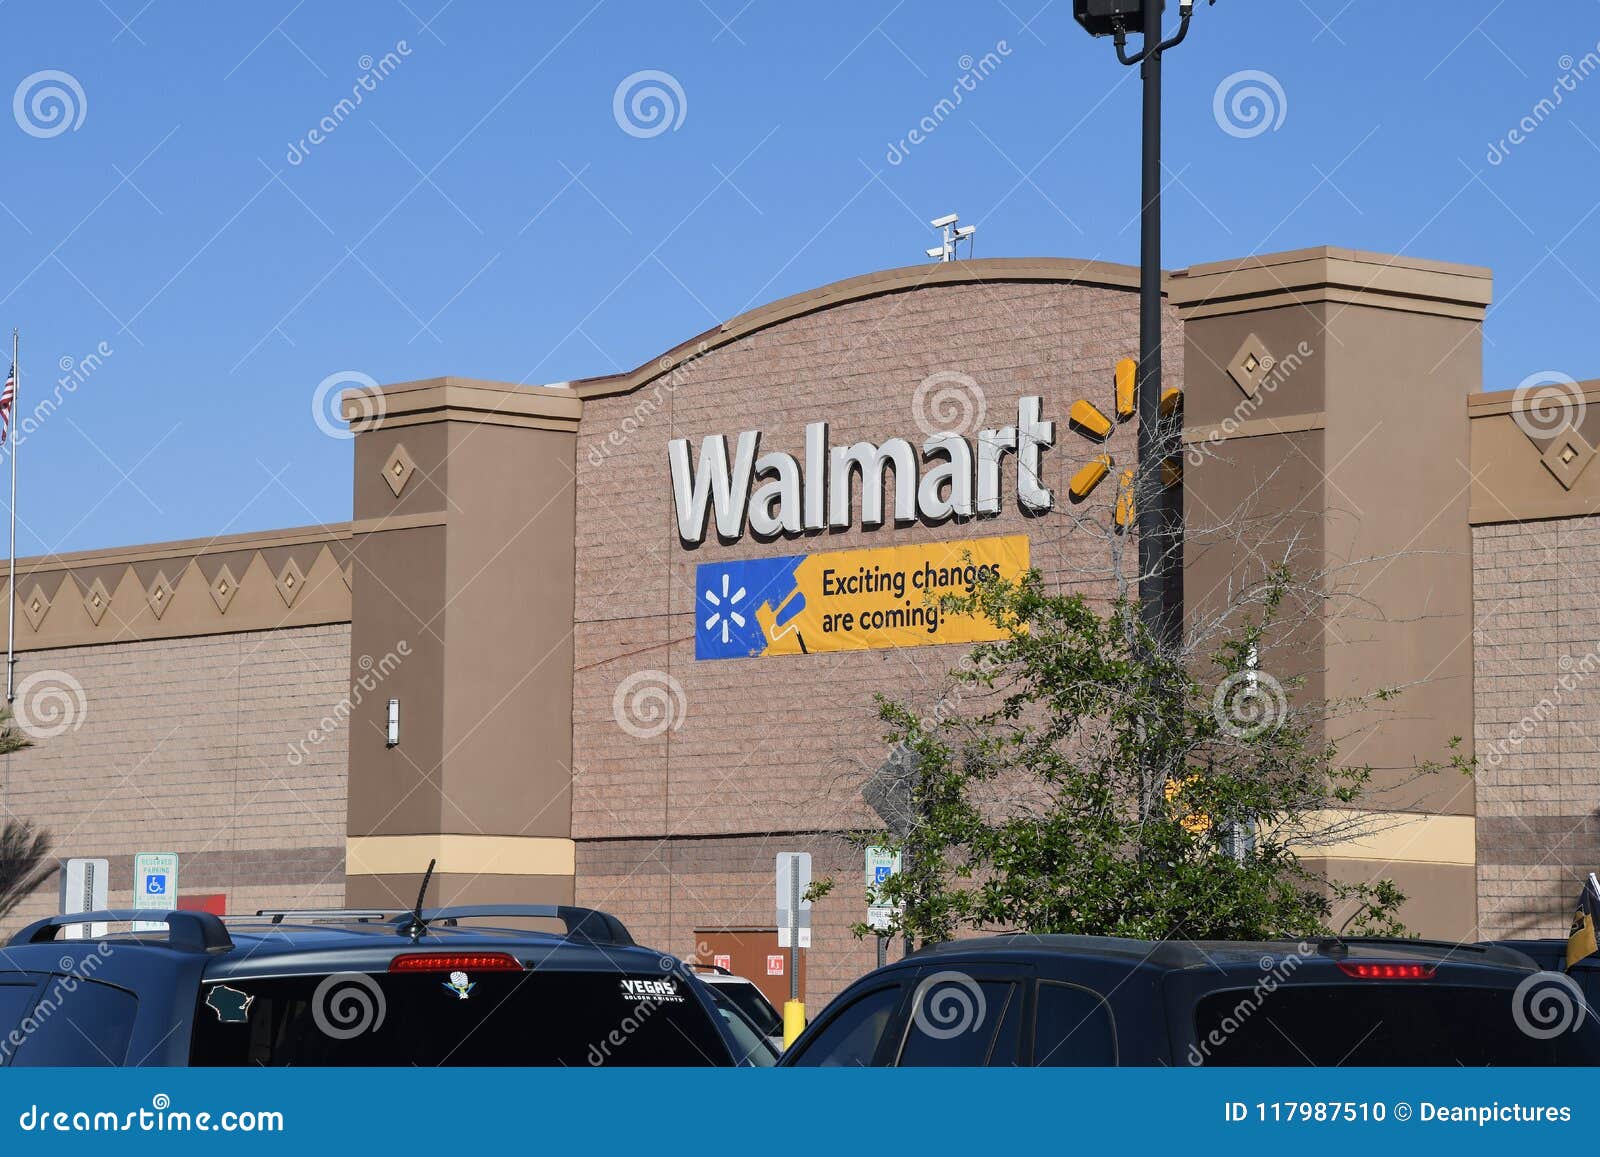 Walmart in Las Vegas